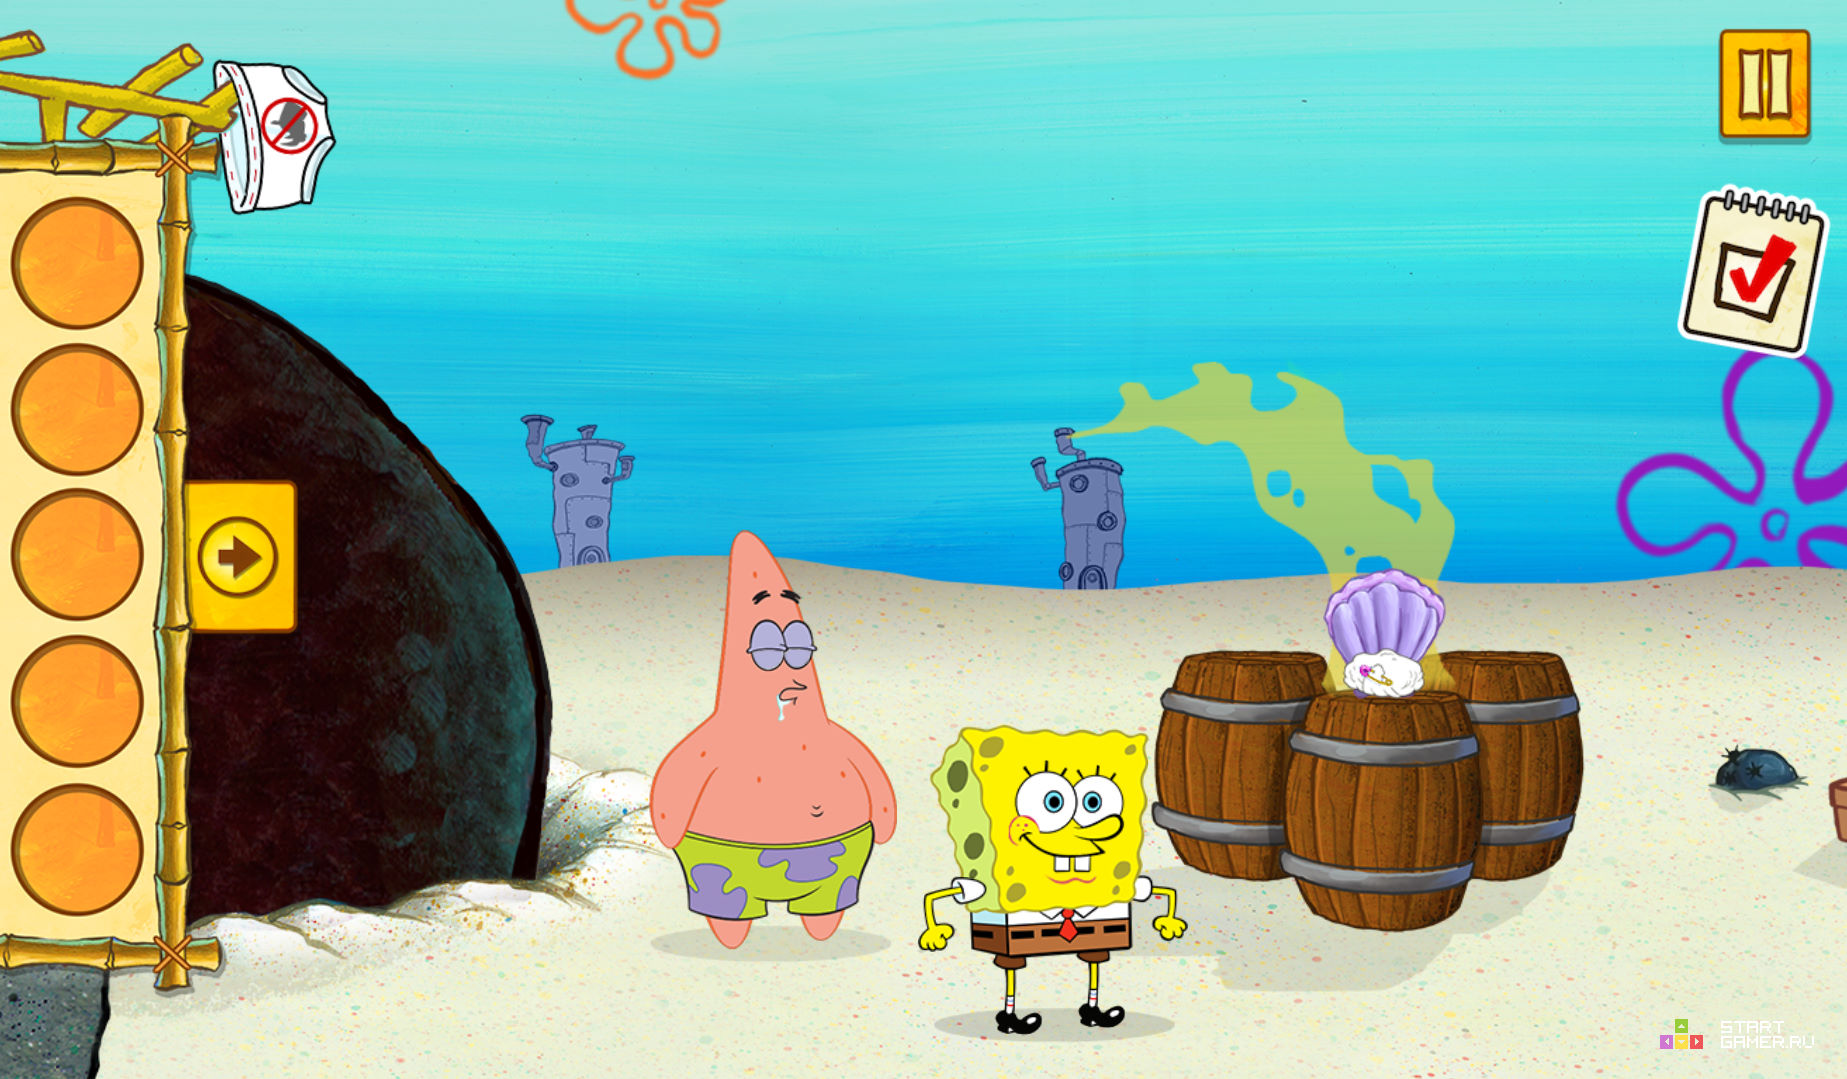 (Spongebob Saves The Day) - играть онлайн бесплатно (изображение № 14) .